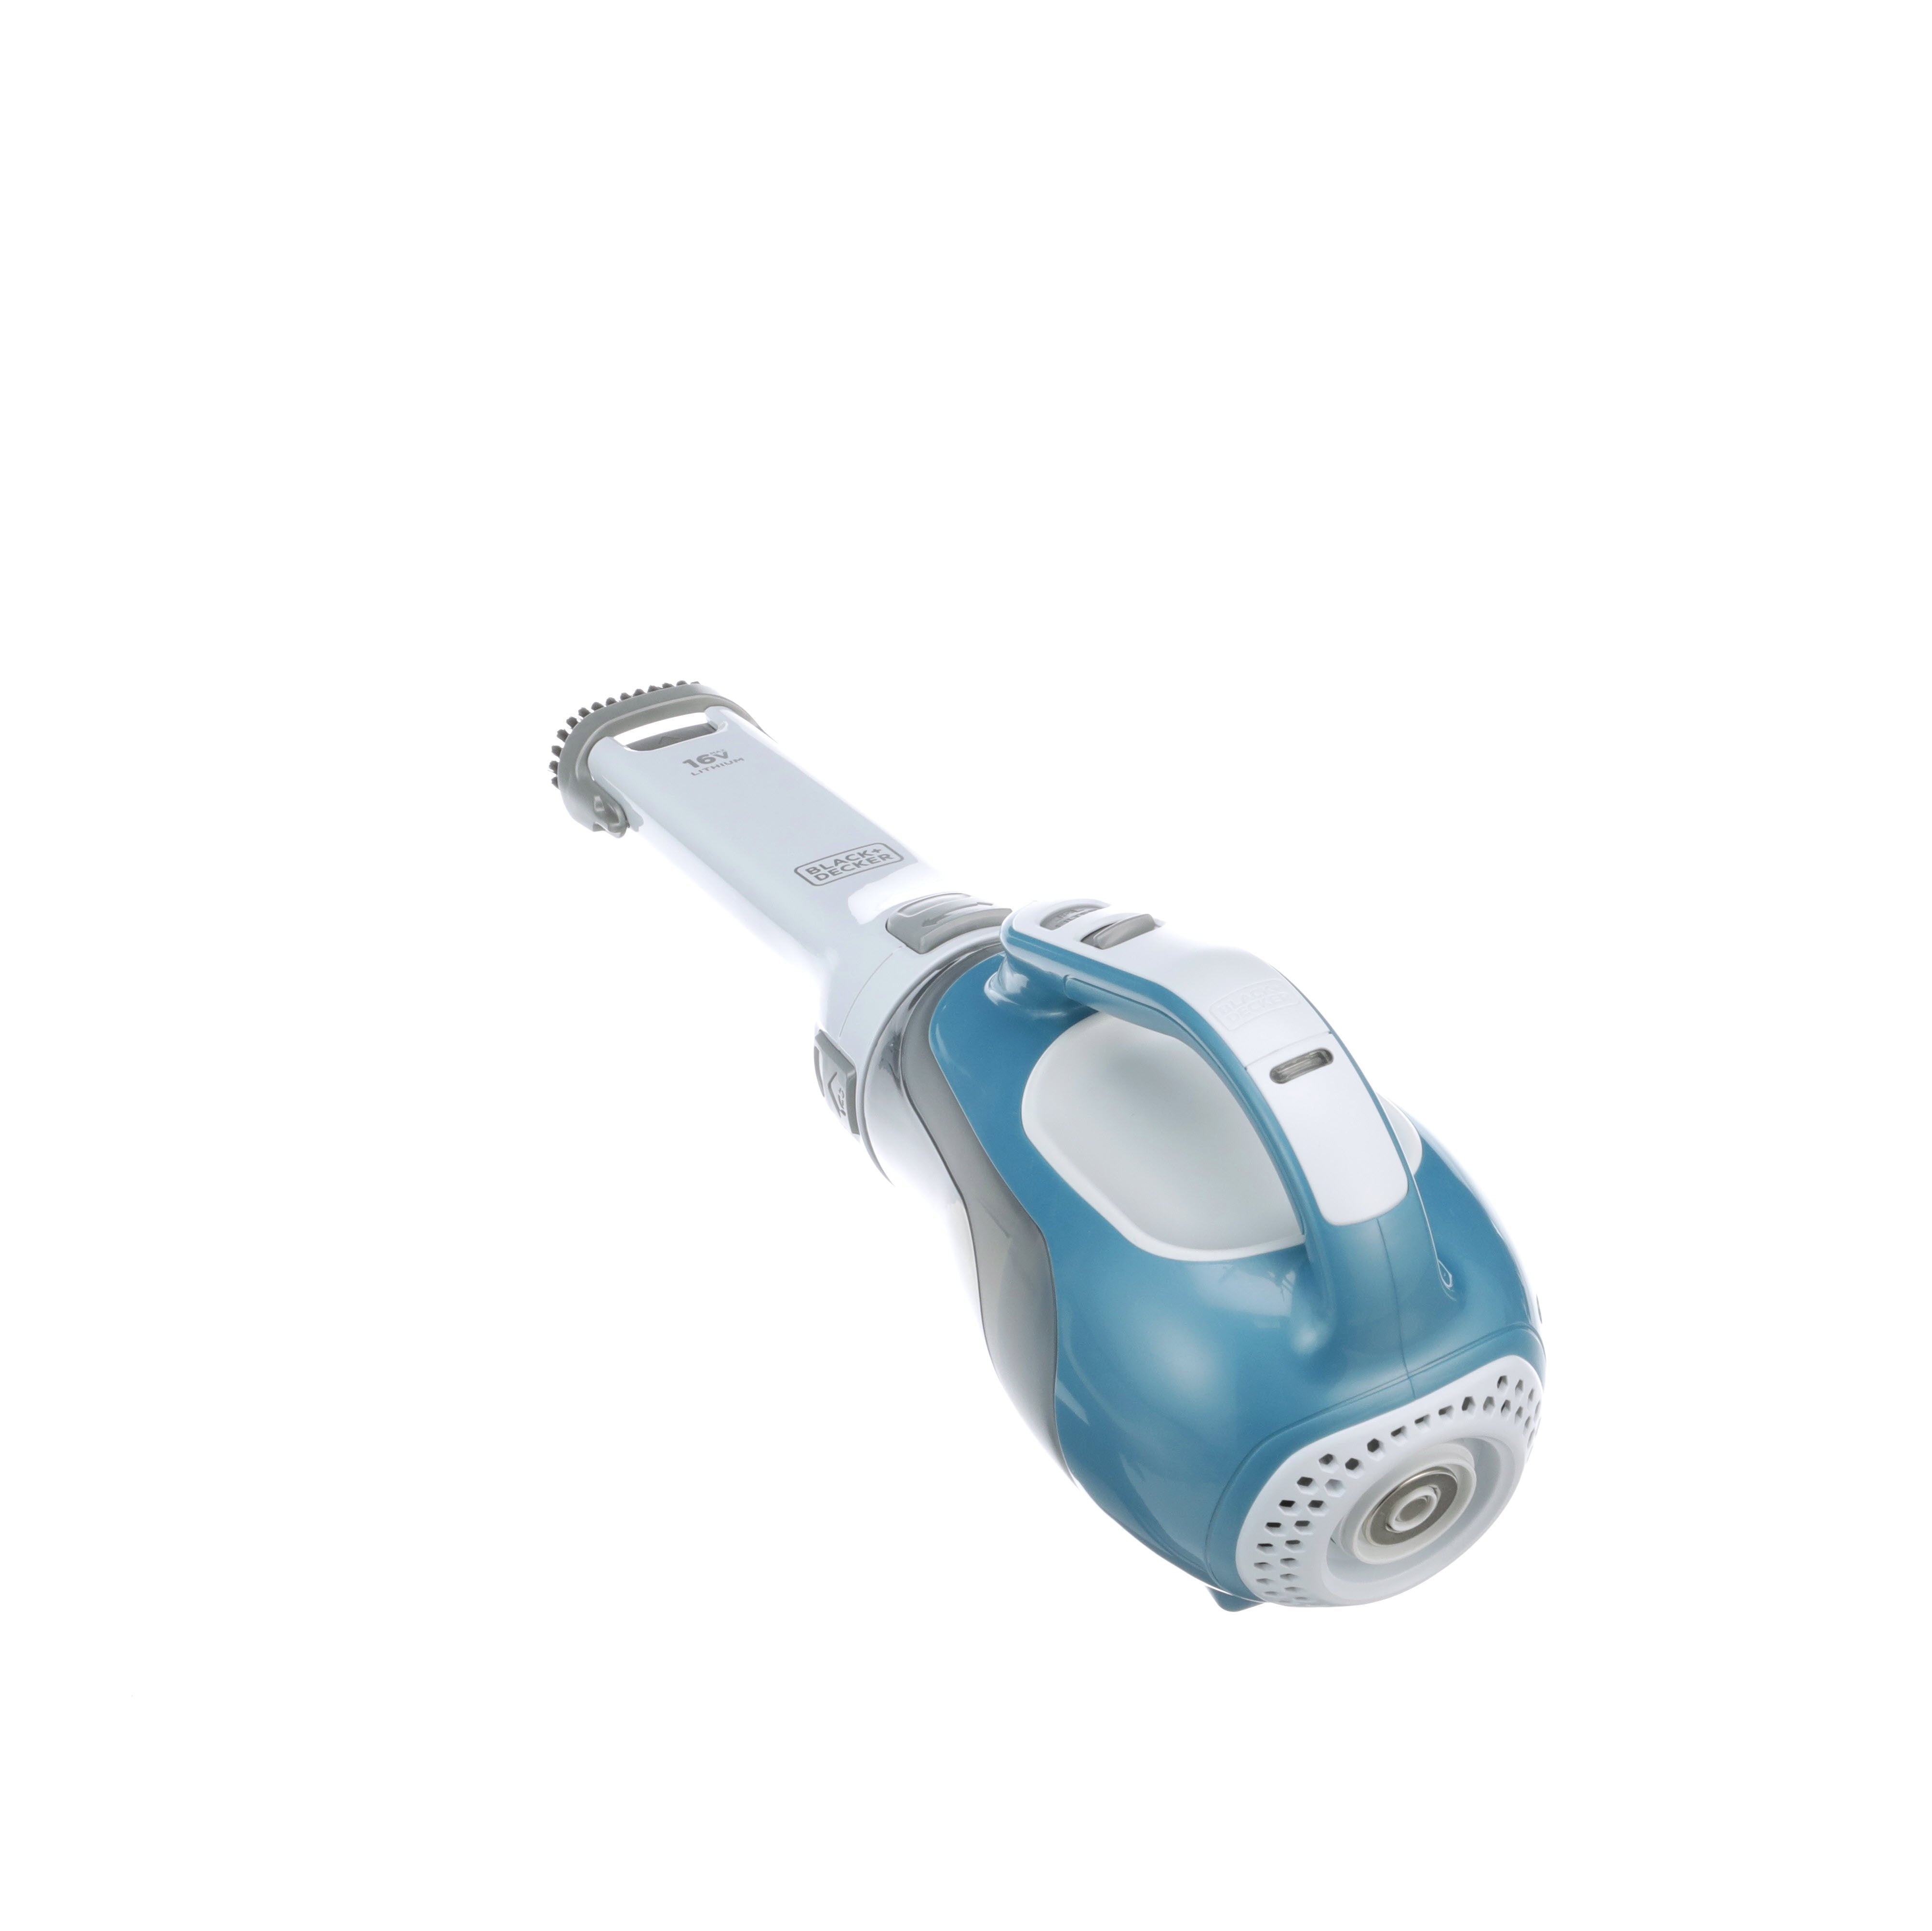 Dustbuster Advancedclean Cordless Handheld Vacuum (CHV1410L) – AutoMaximizer